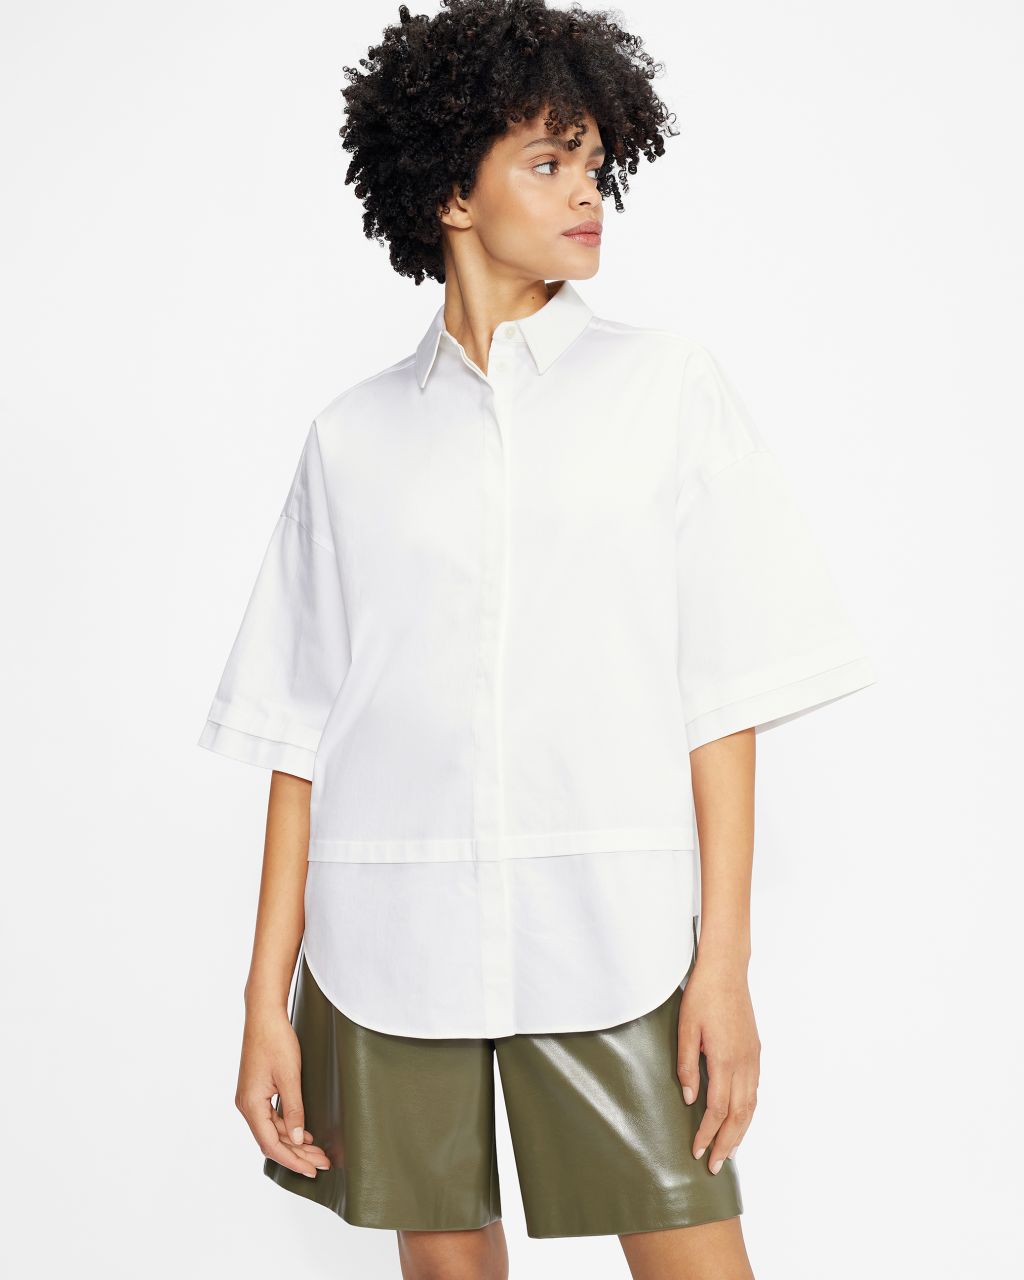 Ted Baker Women's Oversized 3/4 Length Sleeve Shirt in White, Orlanda, Cotton